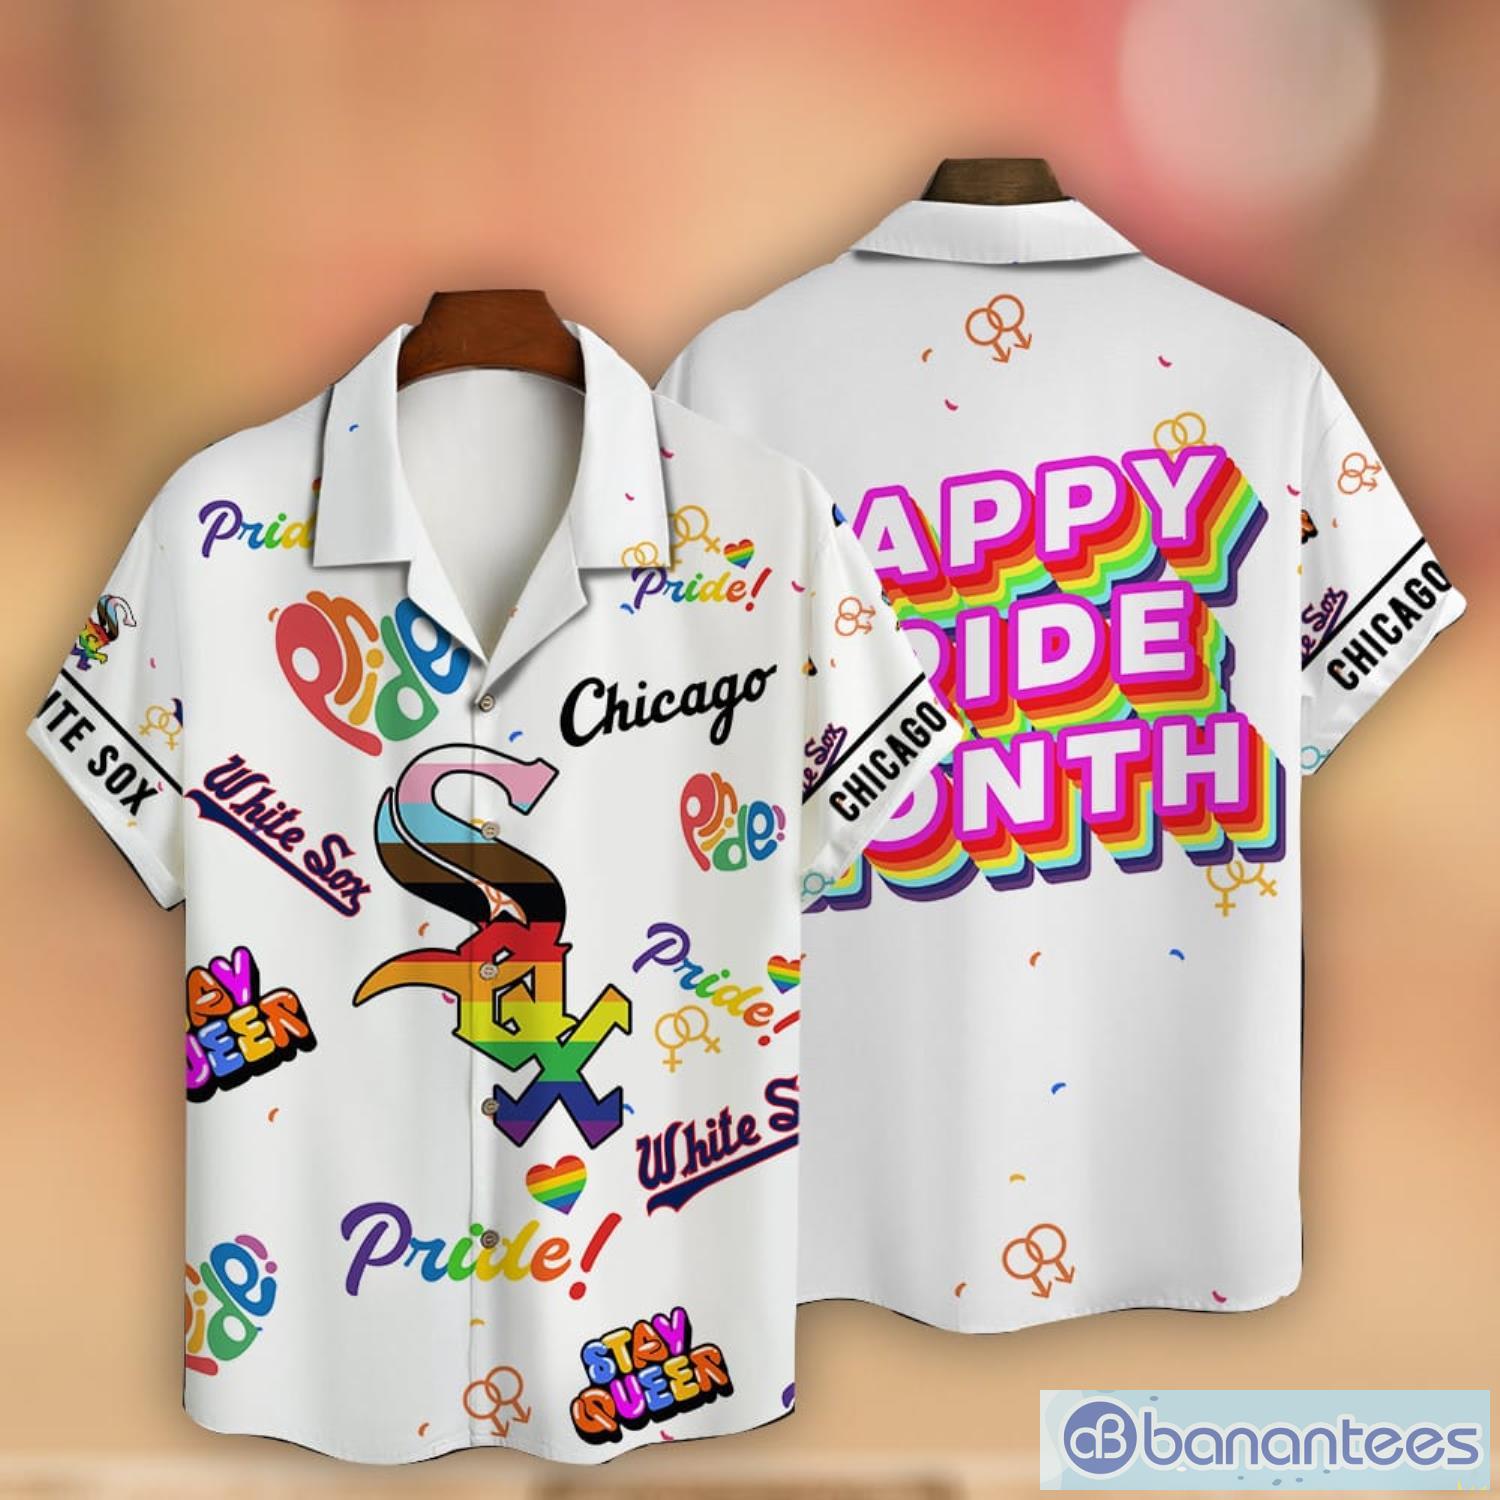 Texas Rangers MLB Flower Hawaiian Shirt For Men Women Impressive Gift For  Fans